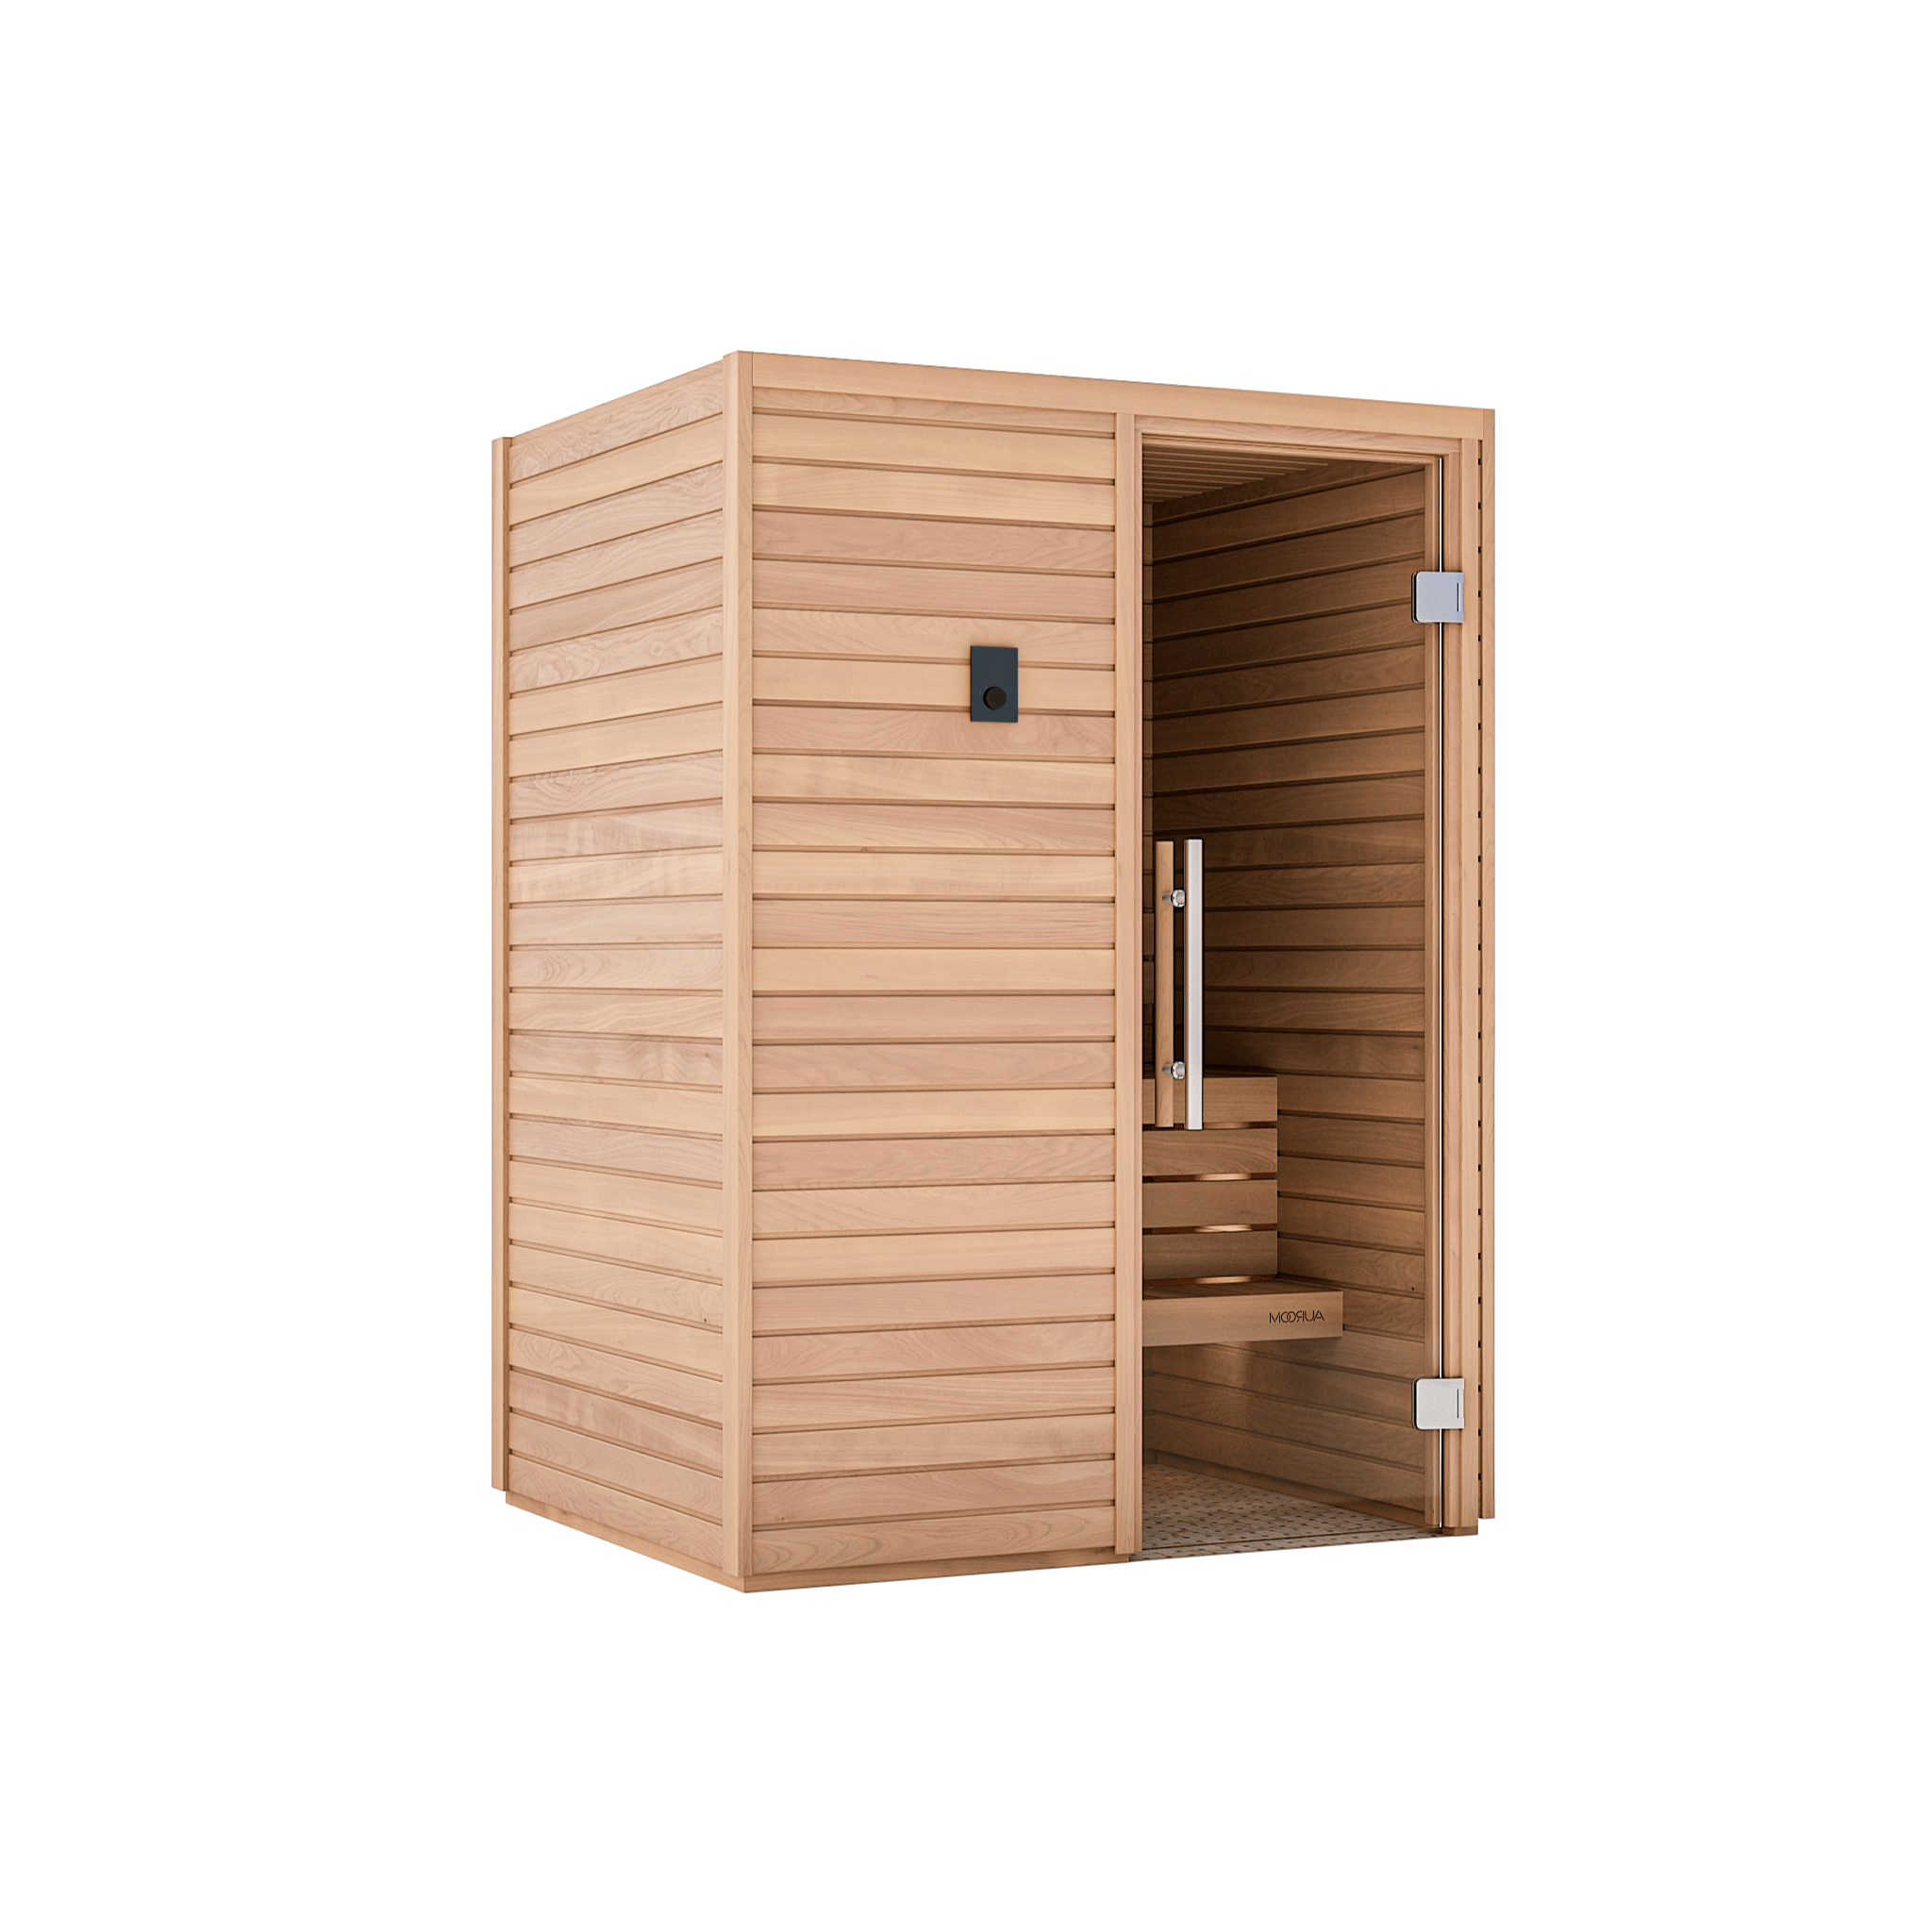 Auroom CALA-WOOD-L 810041112934 Traditional Sauna Auroom Cala Wood 2 Person Indoor Sauna